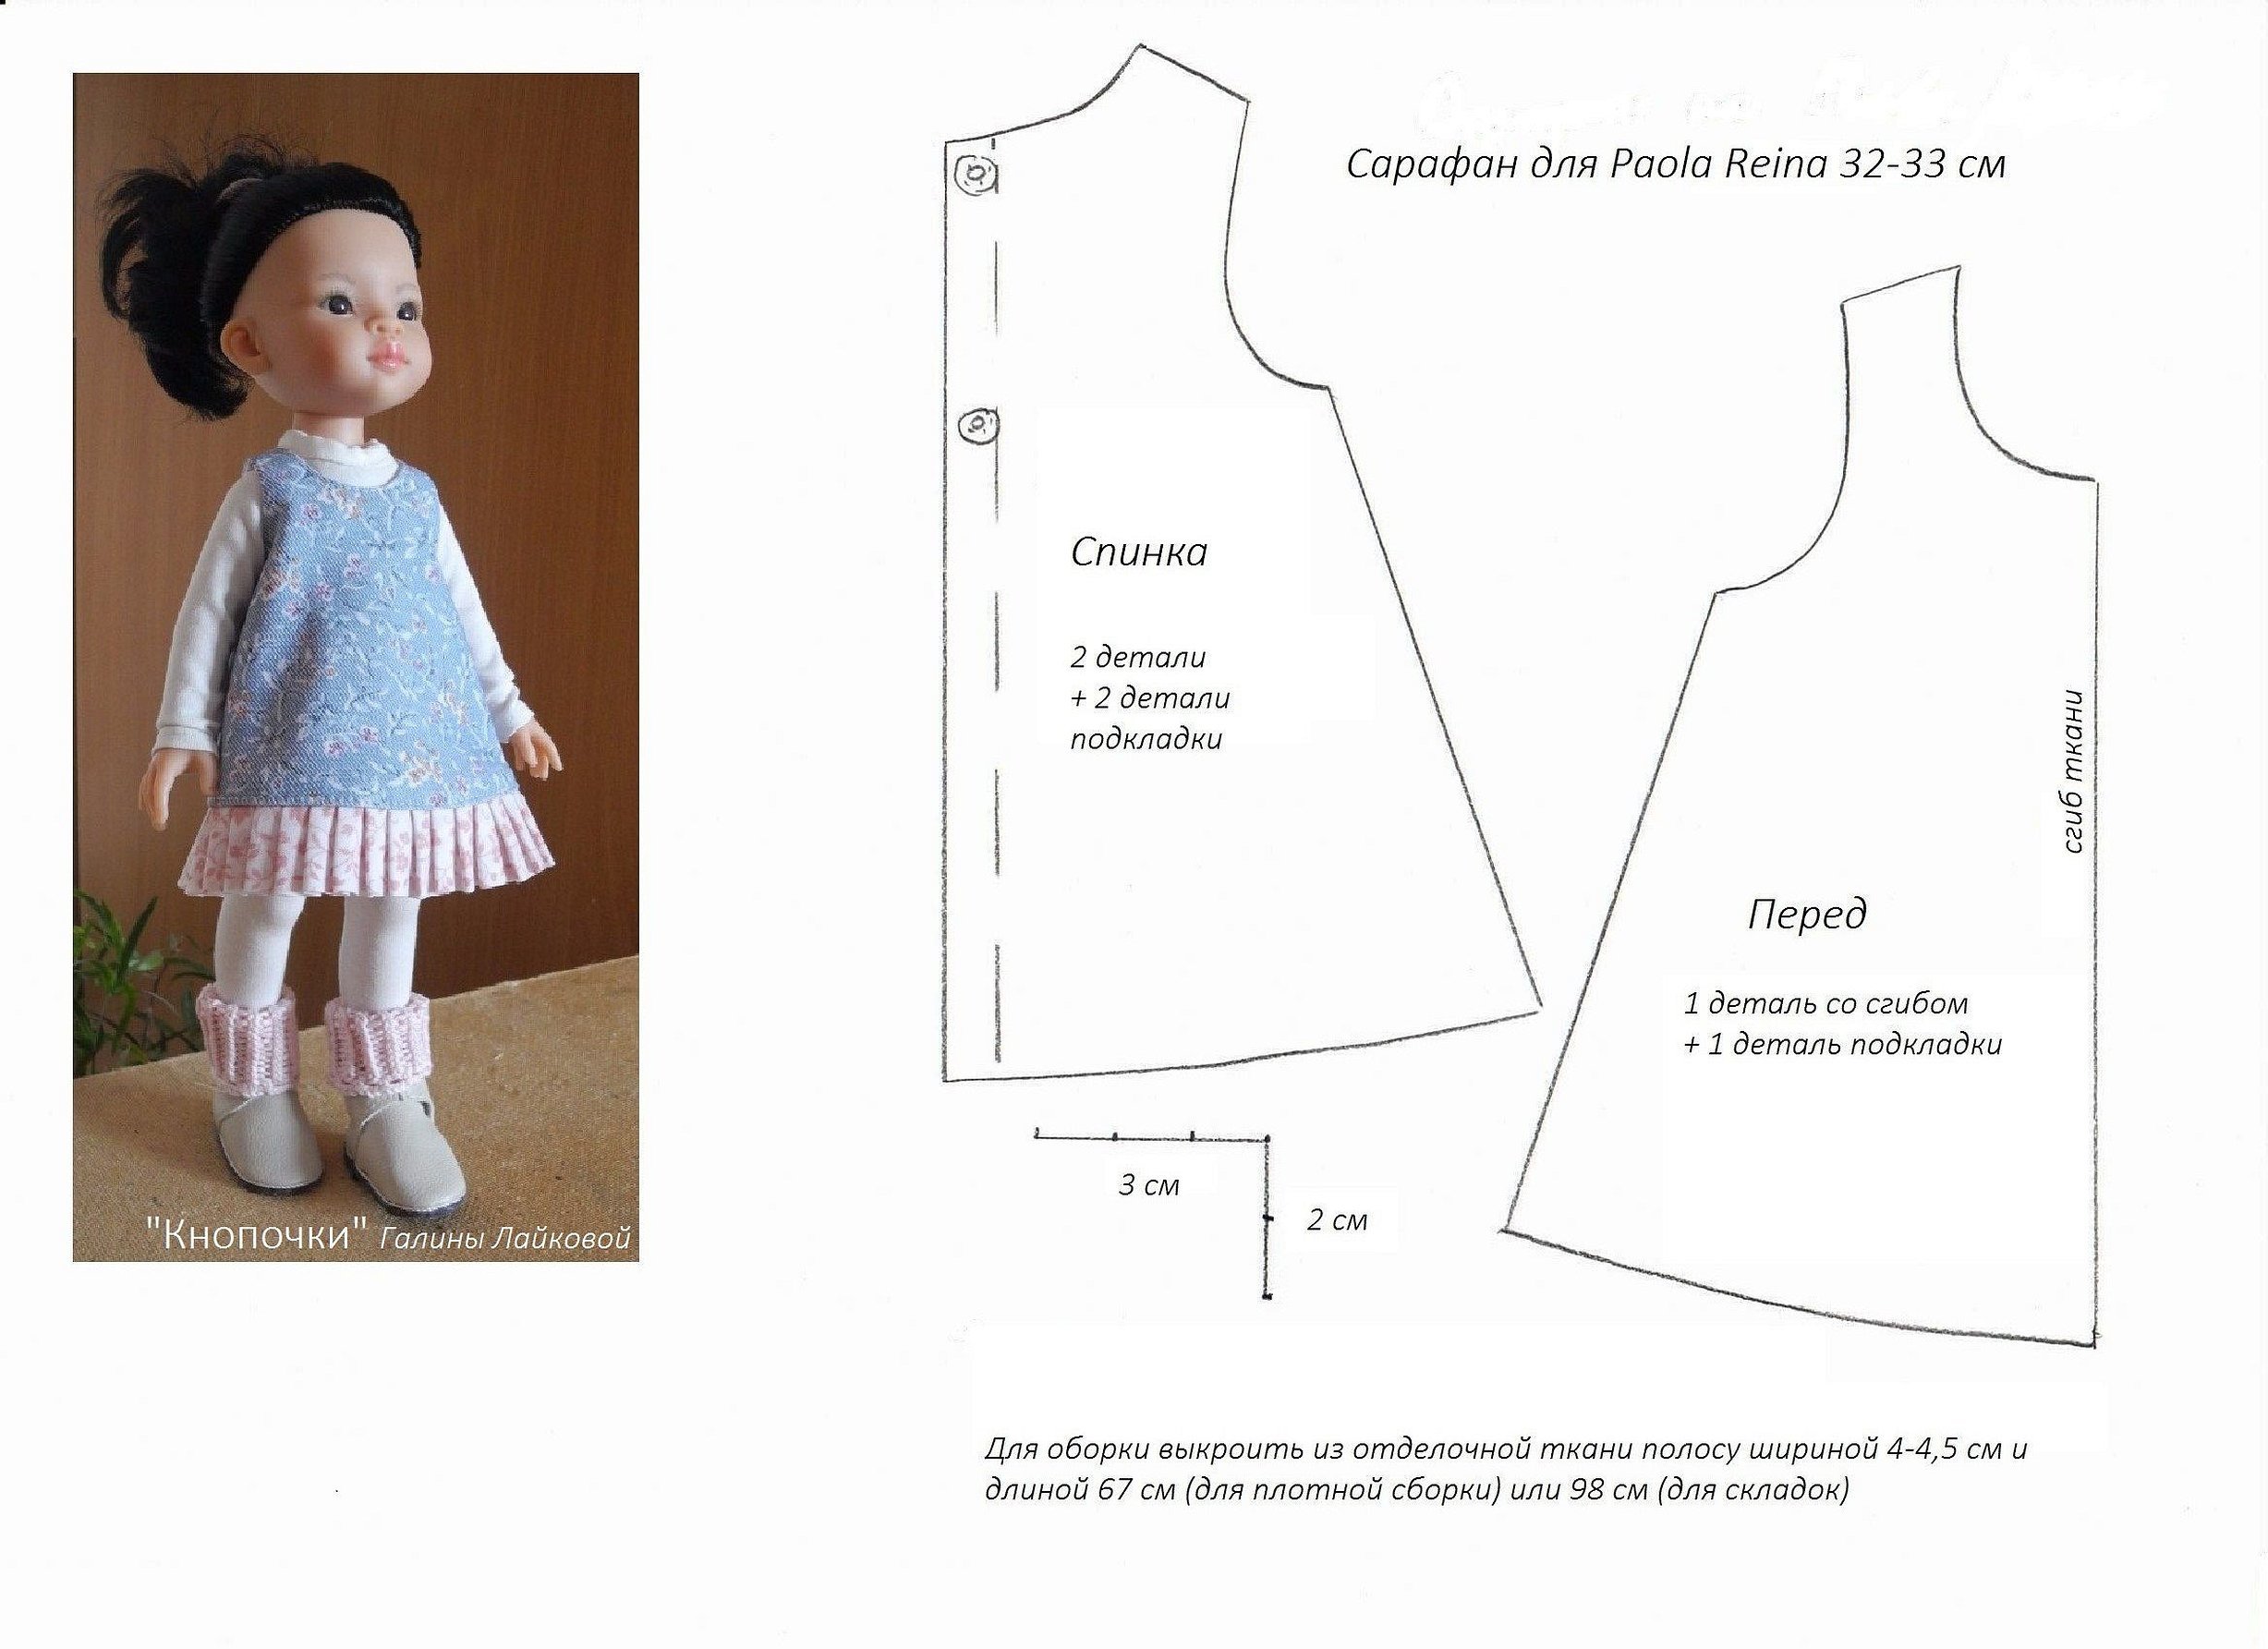 Простое платье для куклы. Выкройка платье для куклы Паола Рейна Paola Reina (32 см). Выкройка для Паола Рейна 34 см. Выкройка пальто для куклы Паола Рейна 32 см. Выкройка сарафан для куклы Paola Reina 32 см.